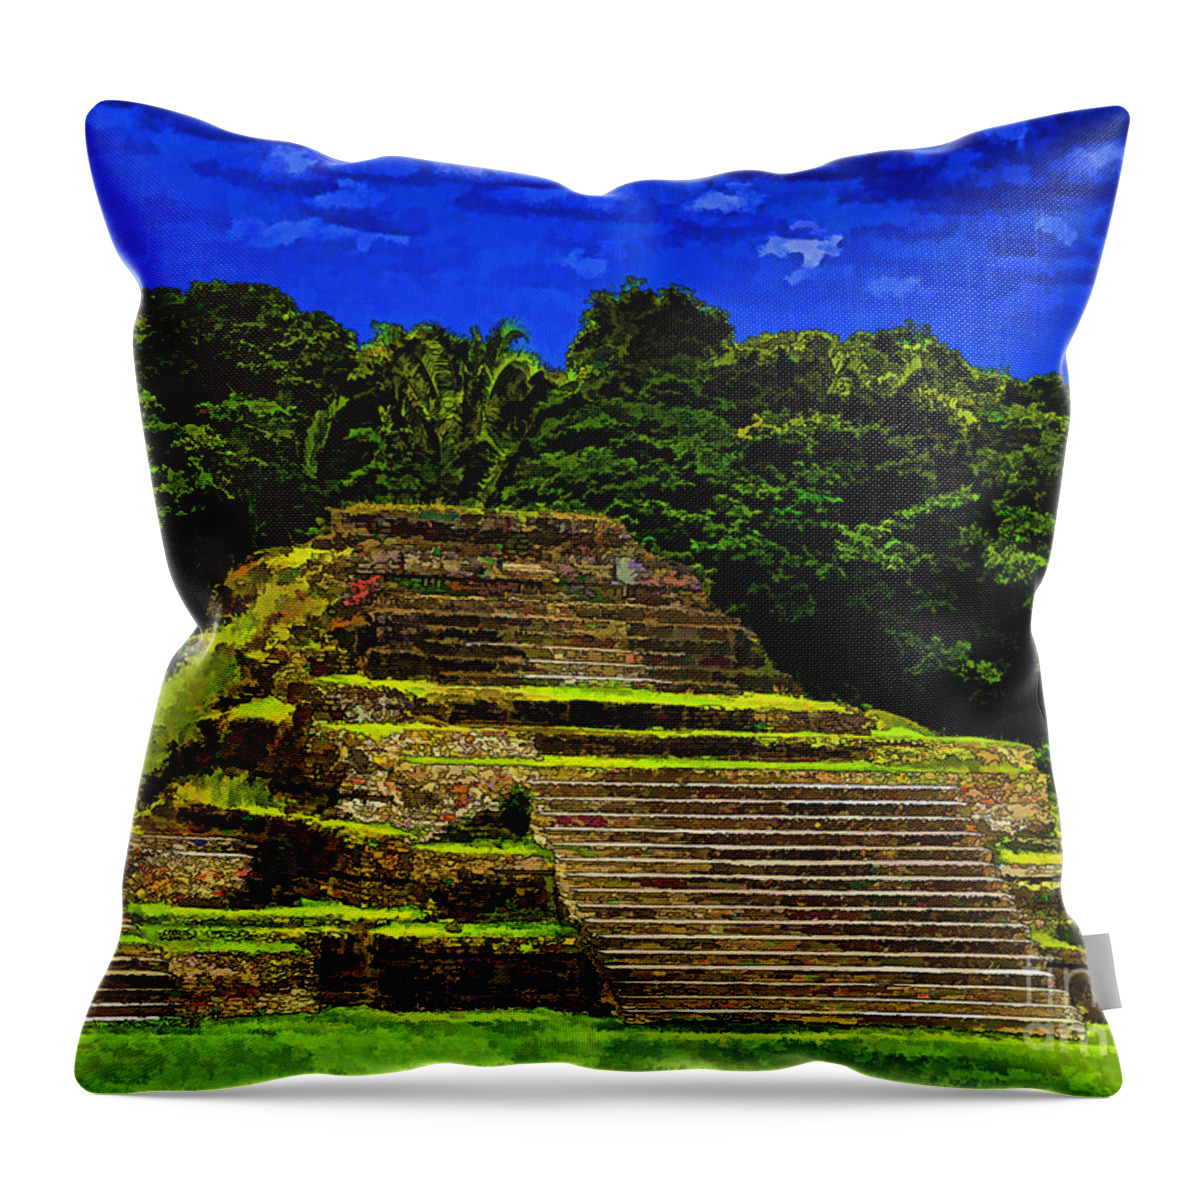 Photo Art Throw Pillow featuring the photograph Mayan Temple by Ken Frischkorn